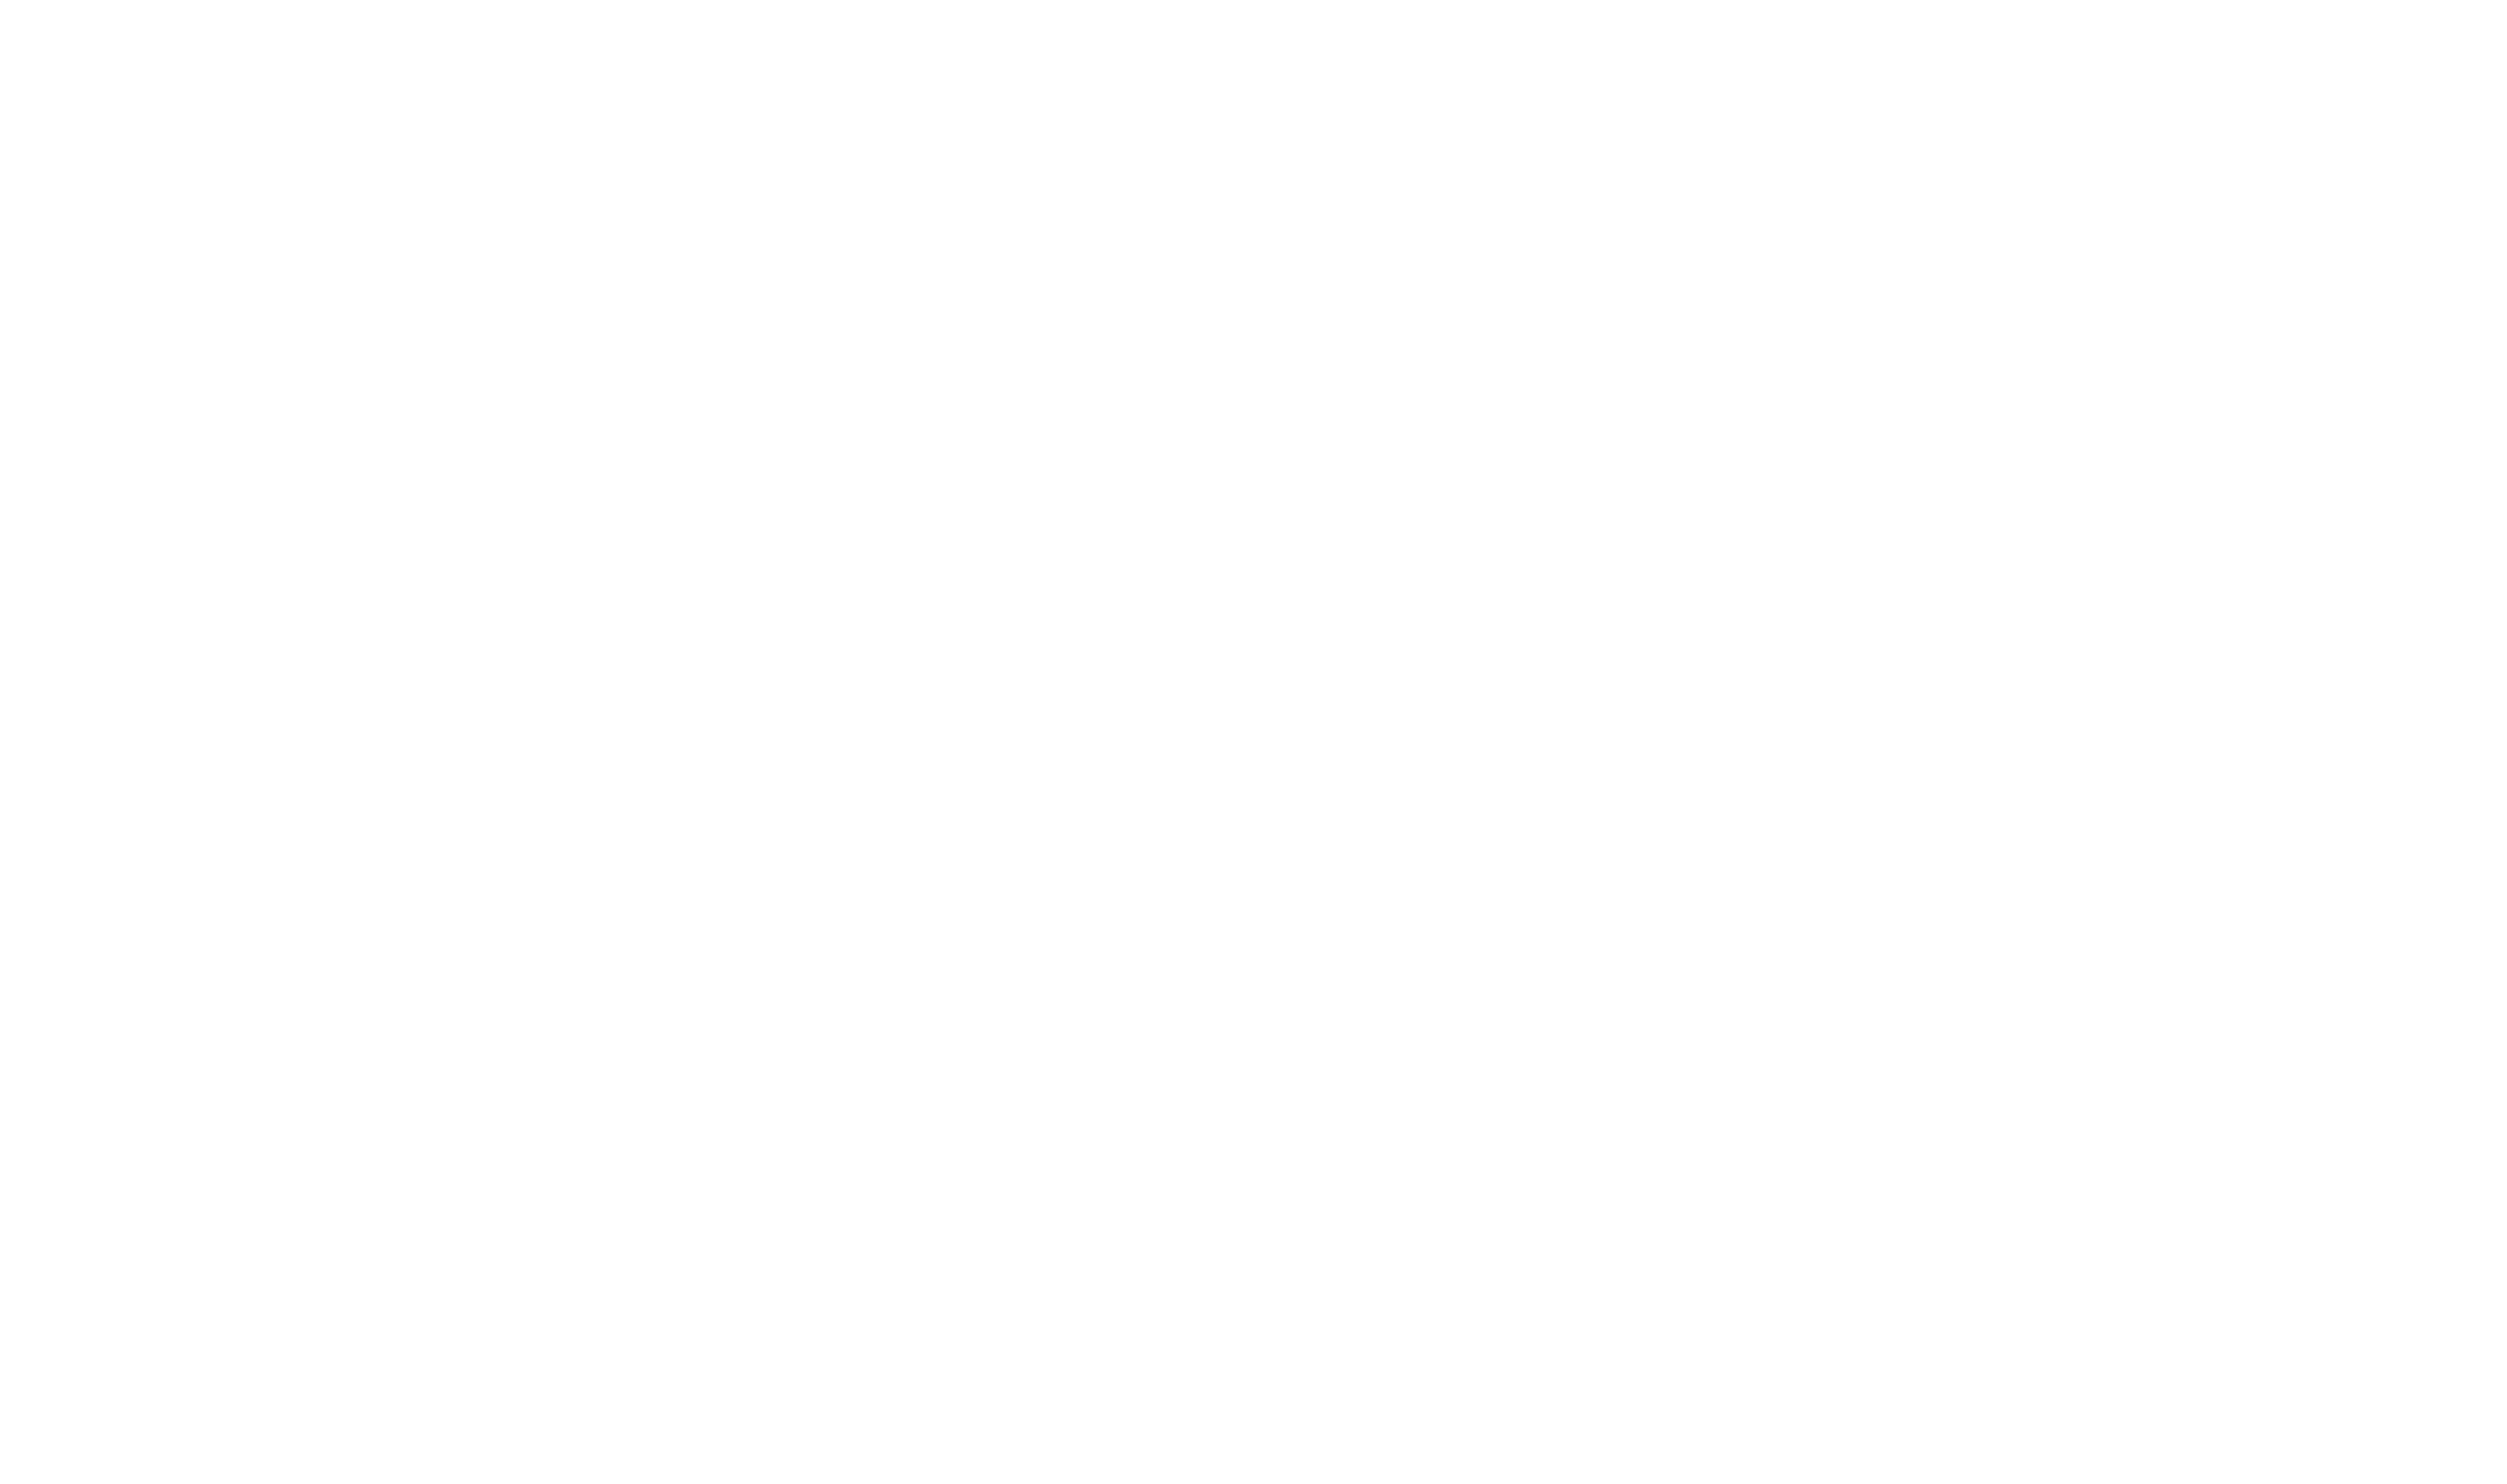 abyssopus.com